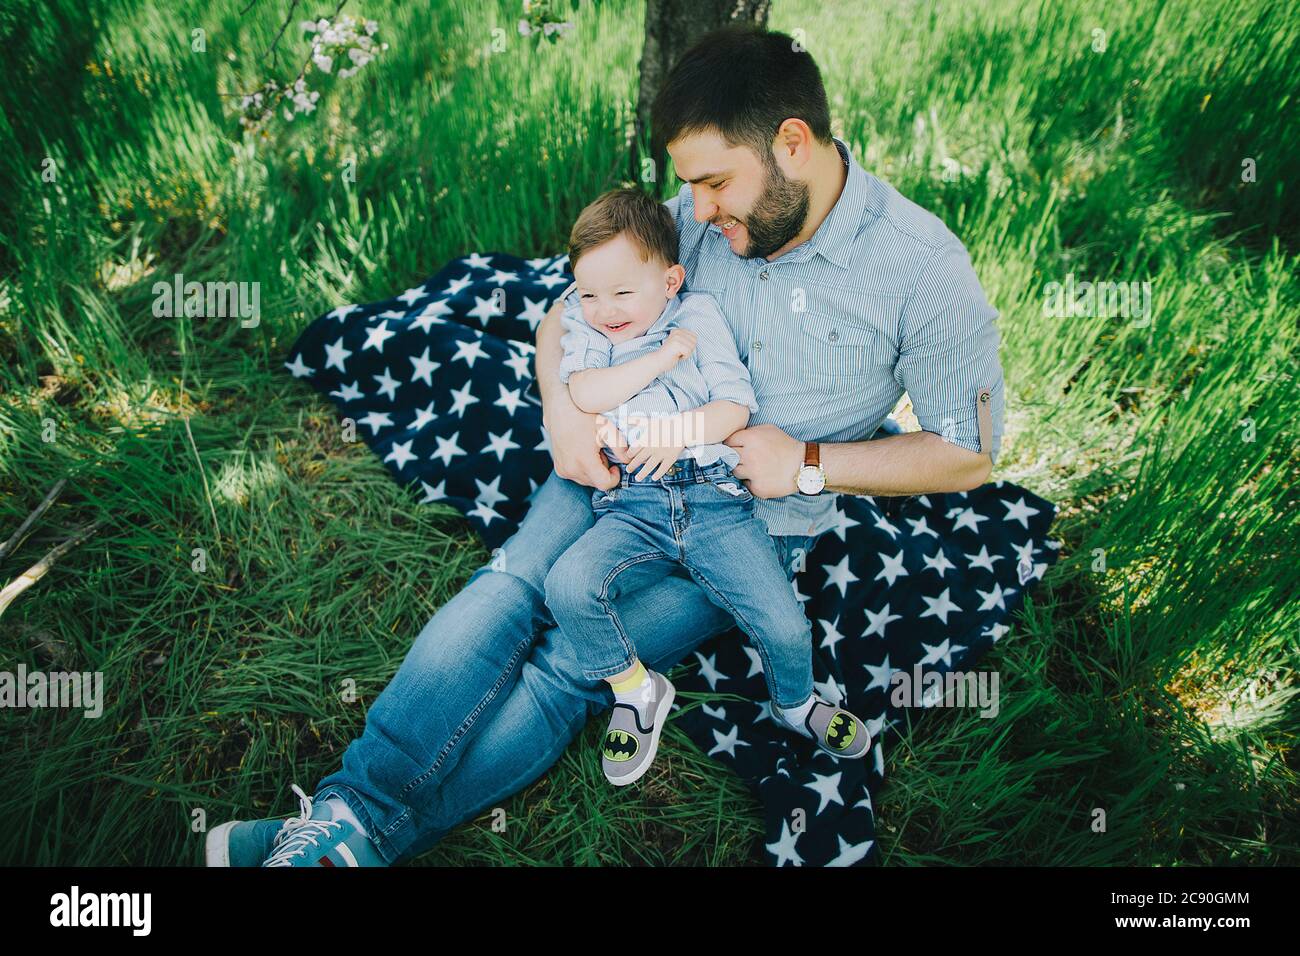 Père avec son fils (2-3) sur une couverture de pique-nique Banque D'Images